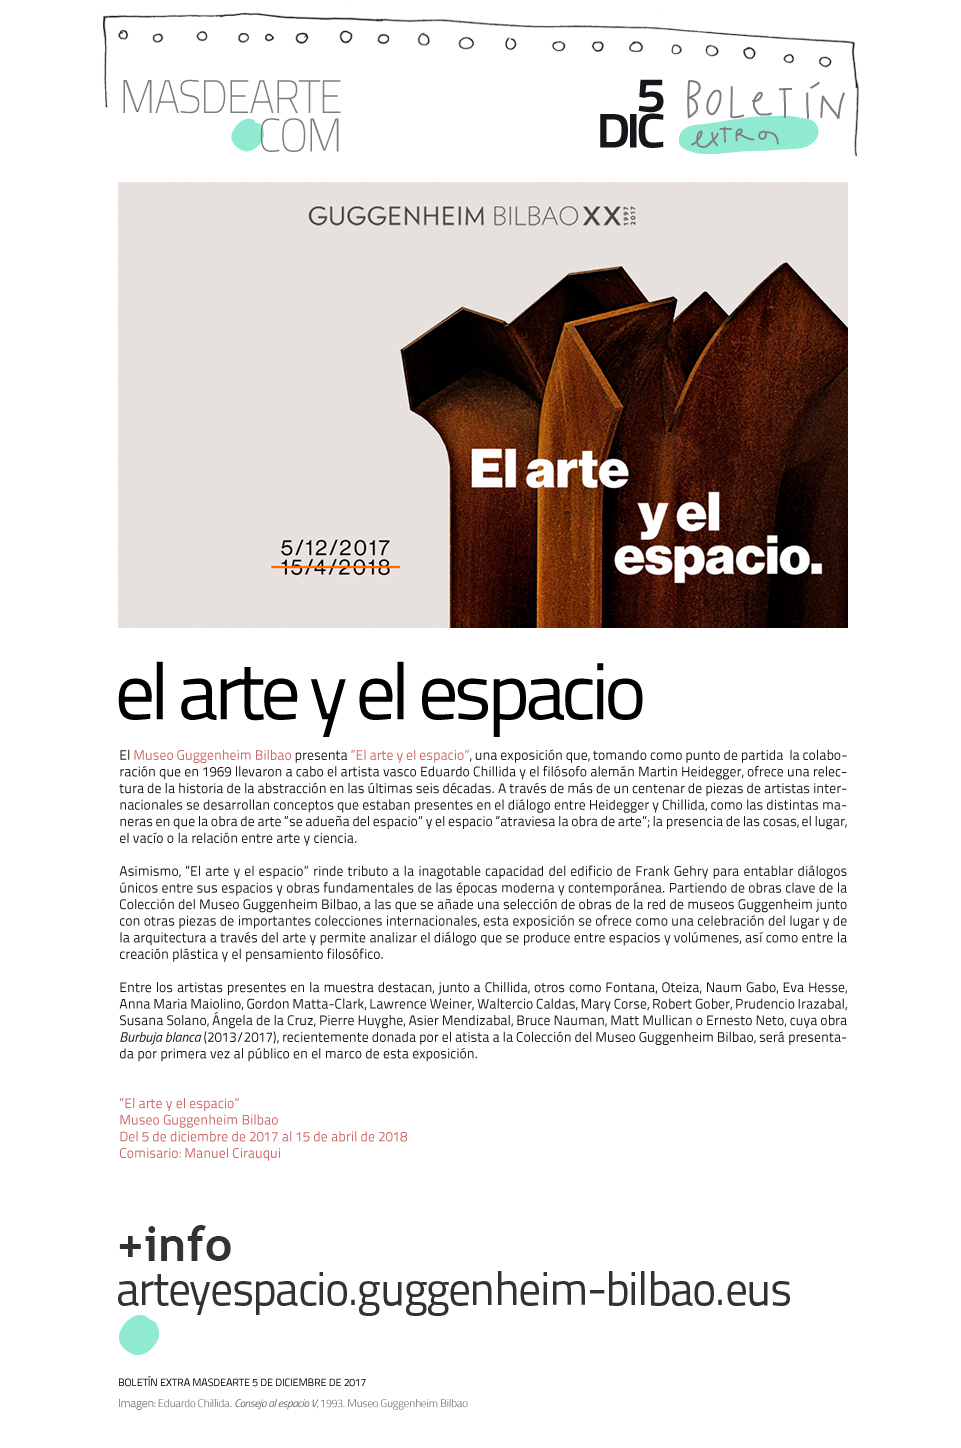 Extra
 masdearte: El arte y el espacio en el Museo Guggenheim Bilbao. Un repaso a la abstracción a través de más de un centenar de piezas realizadas en las últimas seis décadas.
 Hasta abril de 2018